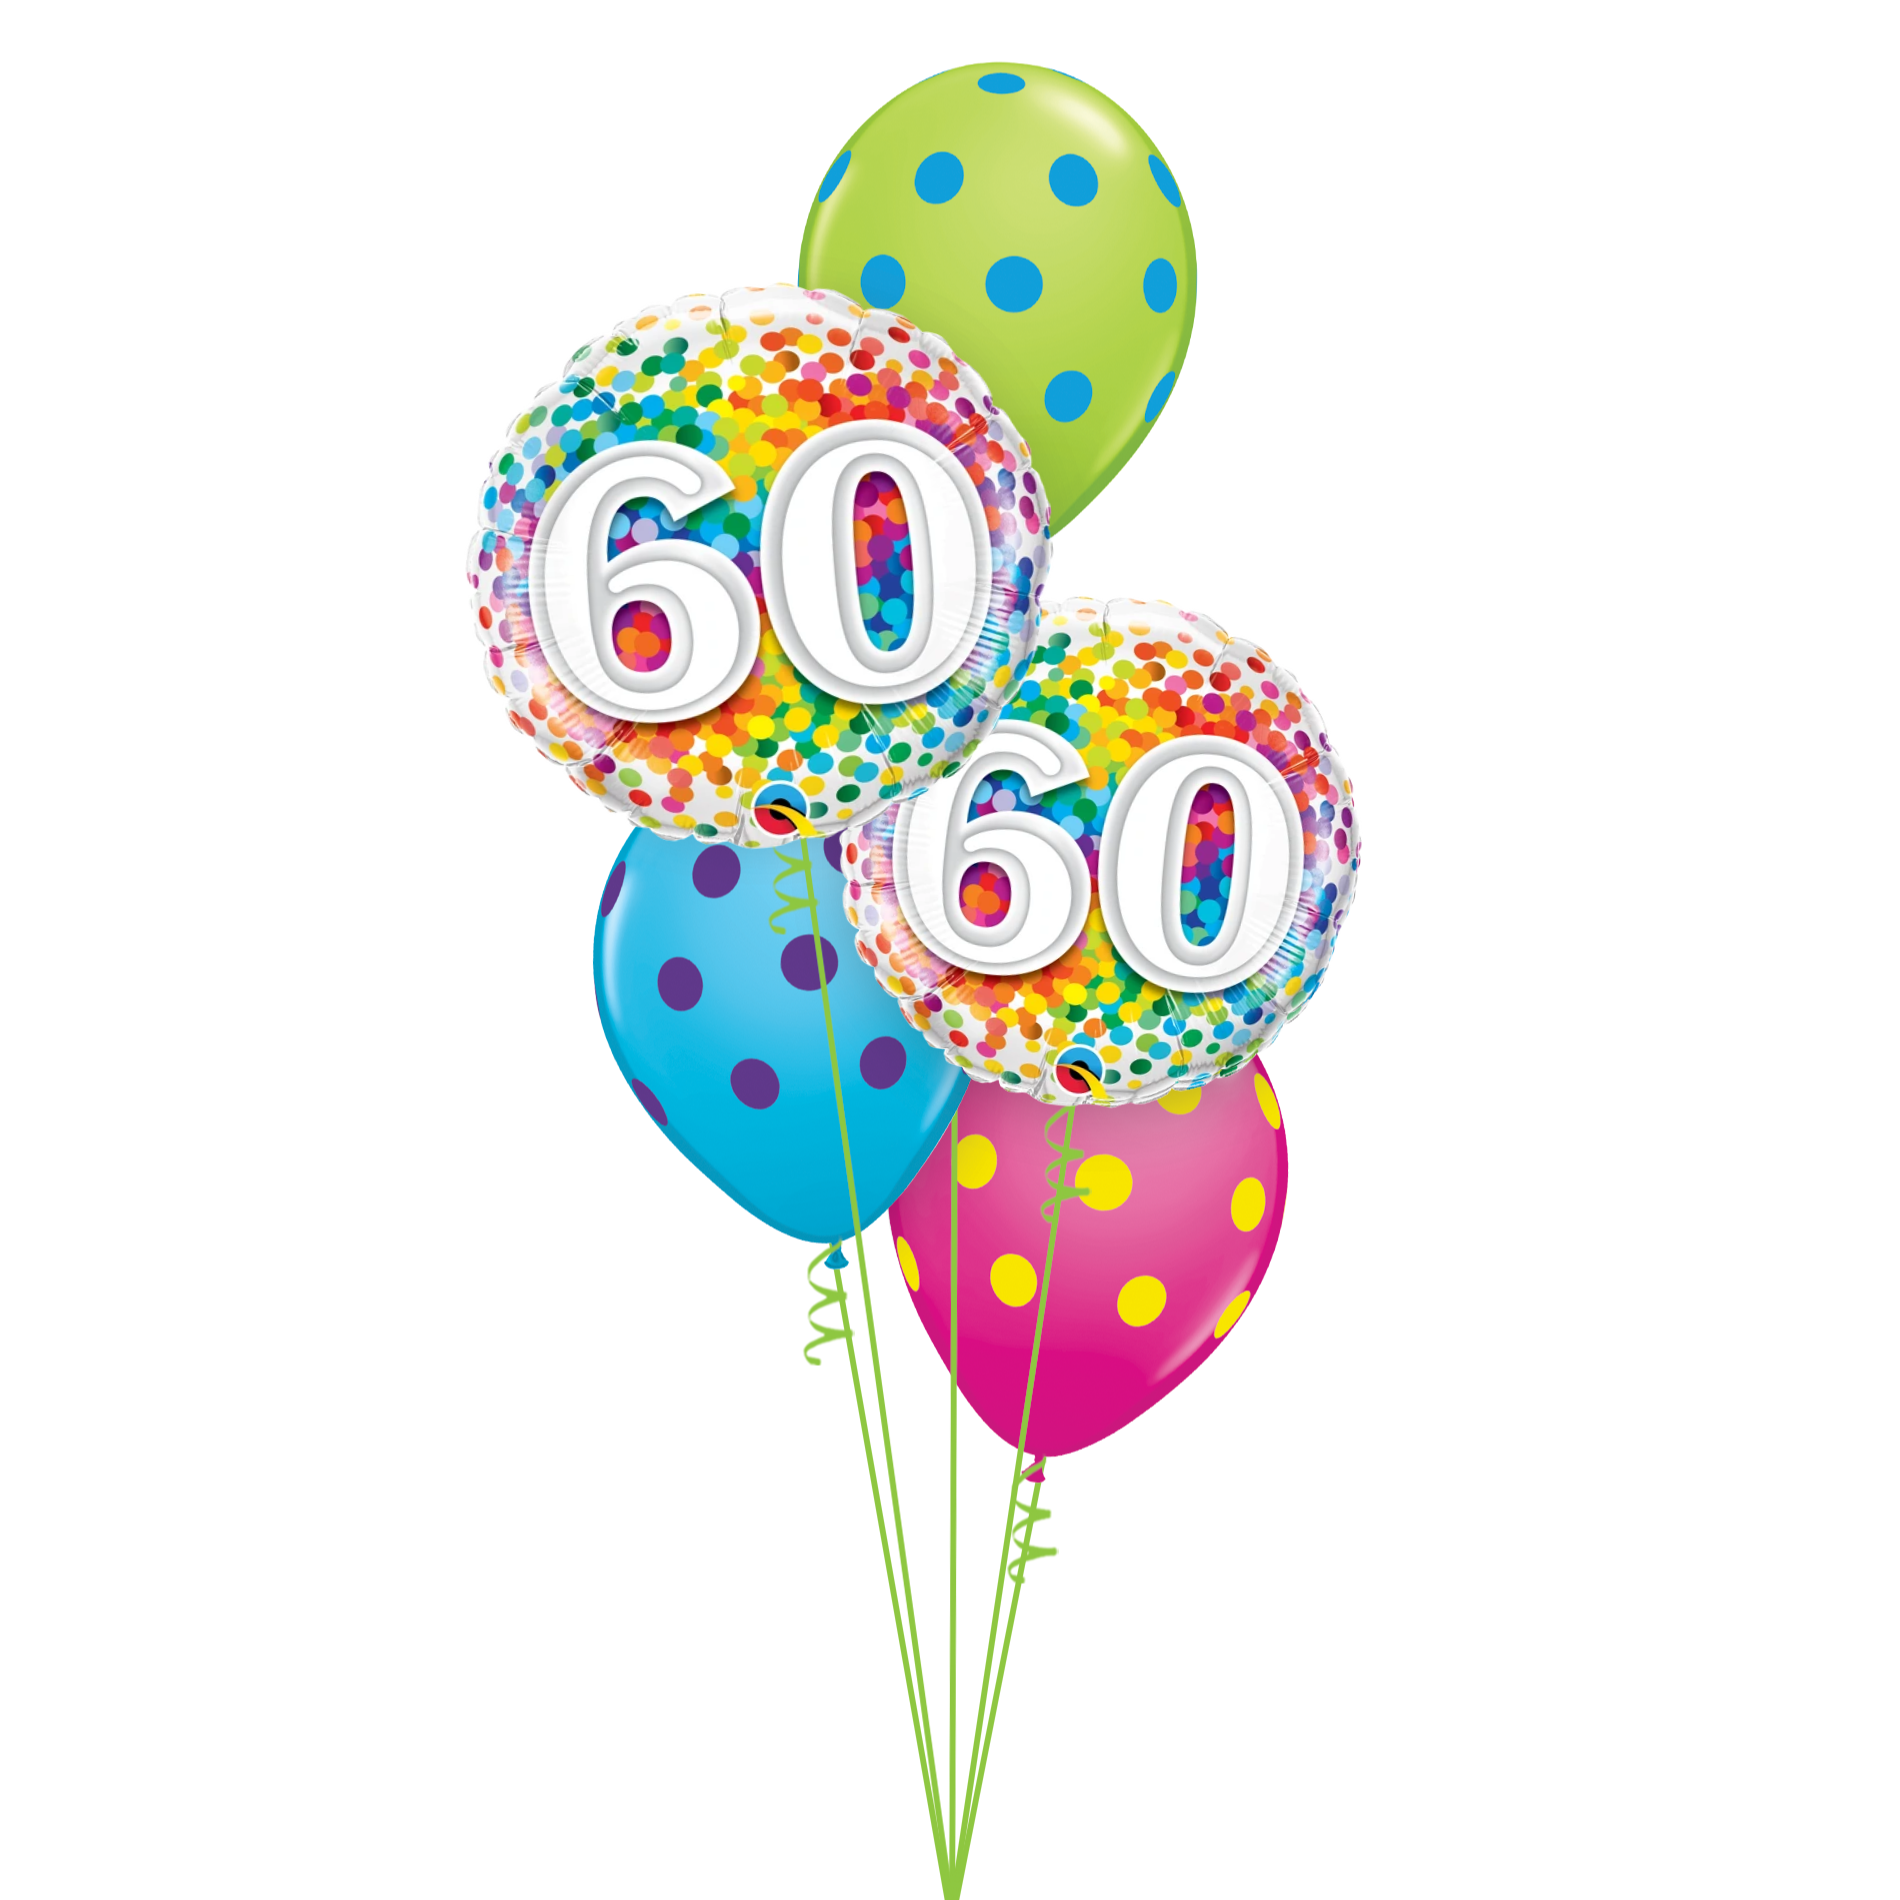 Chúc mừng sinh nhật lần thứ 60! Đây là một ngày đặc biệt quan trọng trong cuộc đời của bạn. Để làm cho ngày hôm nay thêm trọn vẹn, hãy xem những hình ảnh đẹp về sinh nhật 60 tuổi để cảm nhận sự vui tươi và hạnh phúc.